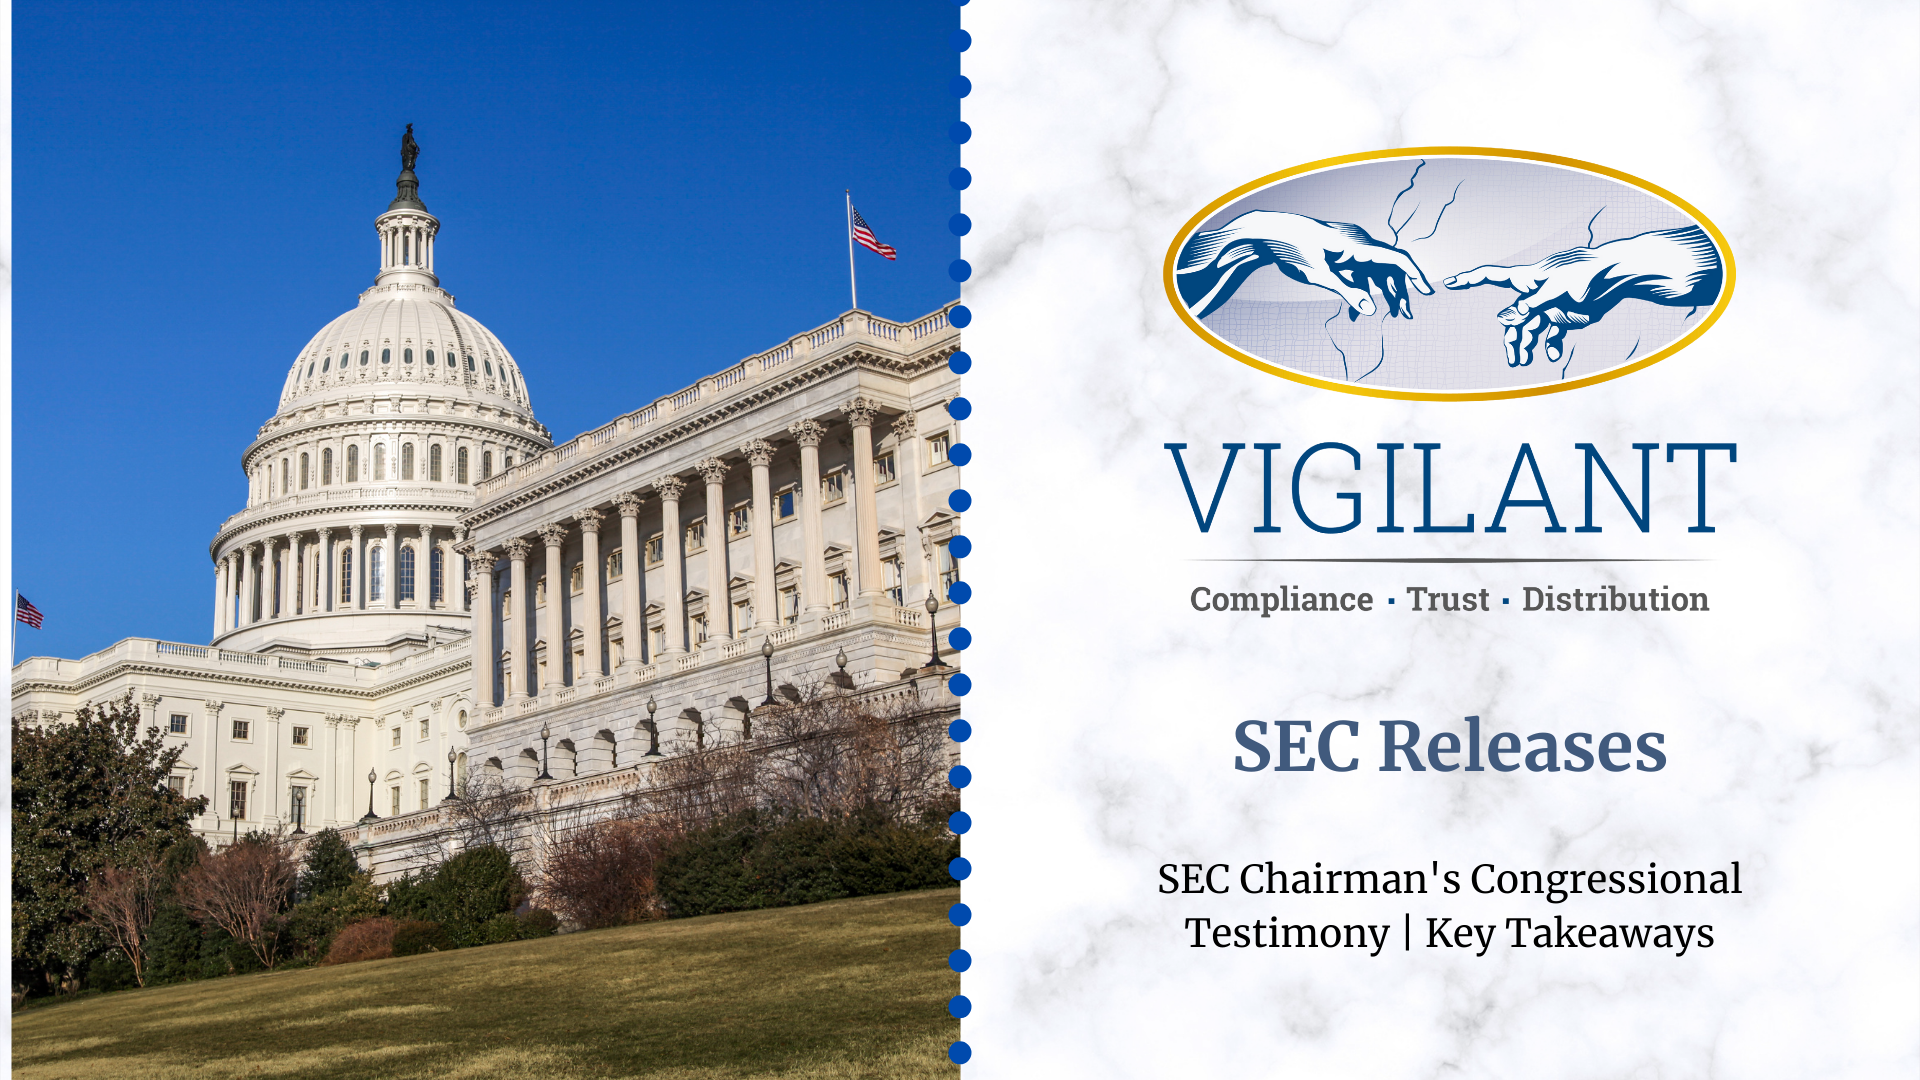 SEC Chairman's Congressional Testimony | Key Takeaways